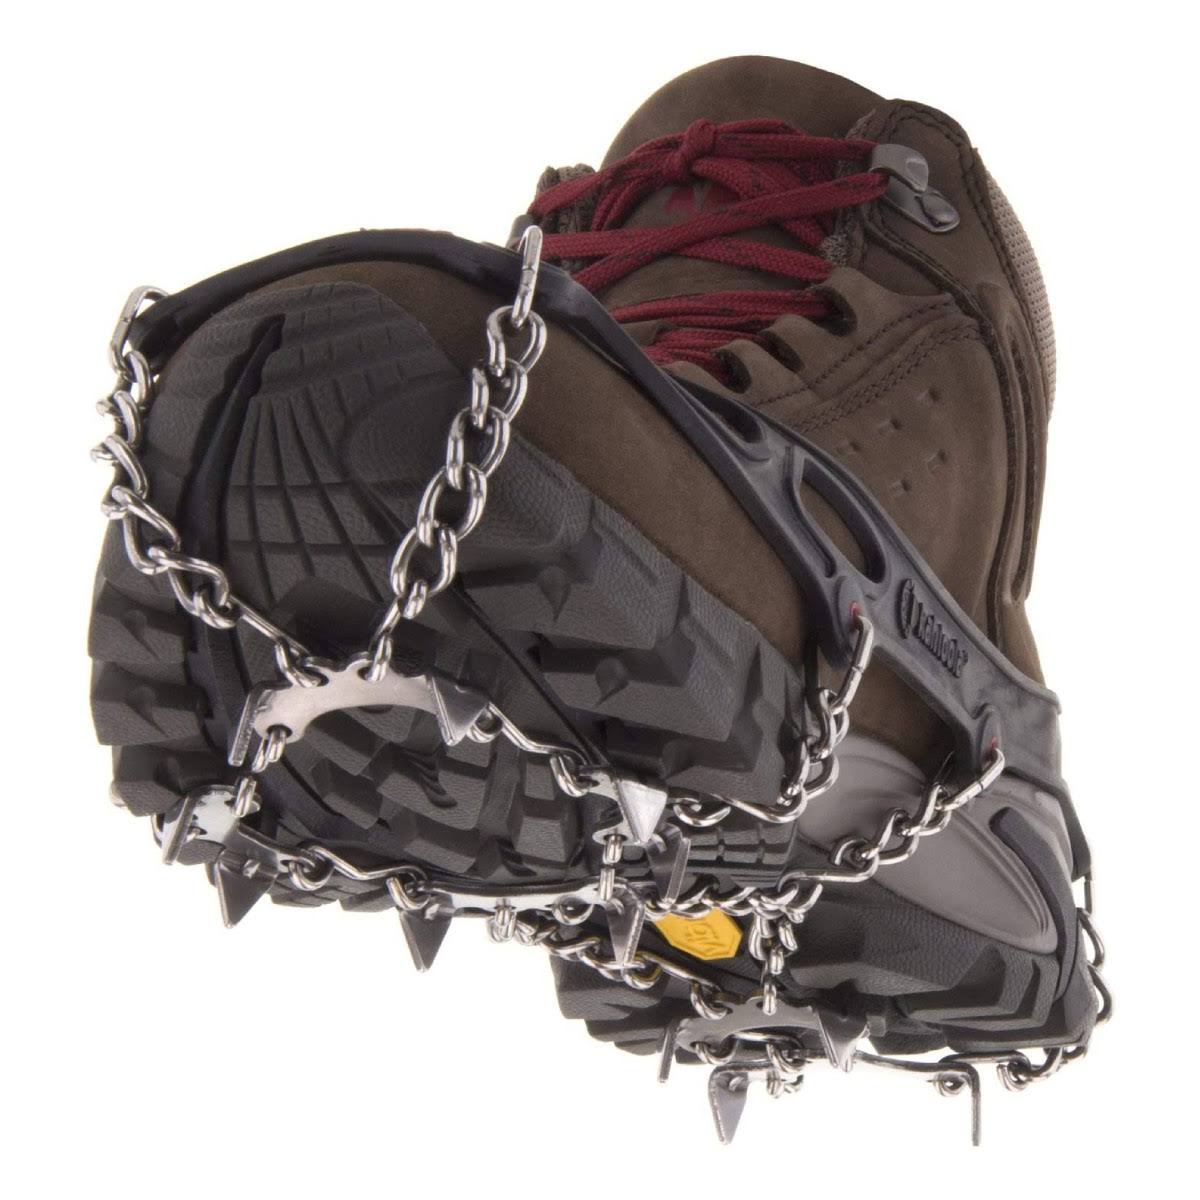 Kahtoola MICROspikes Footwear Traction , Black, Medium, KT02007